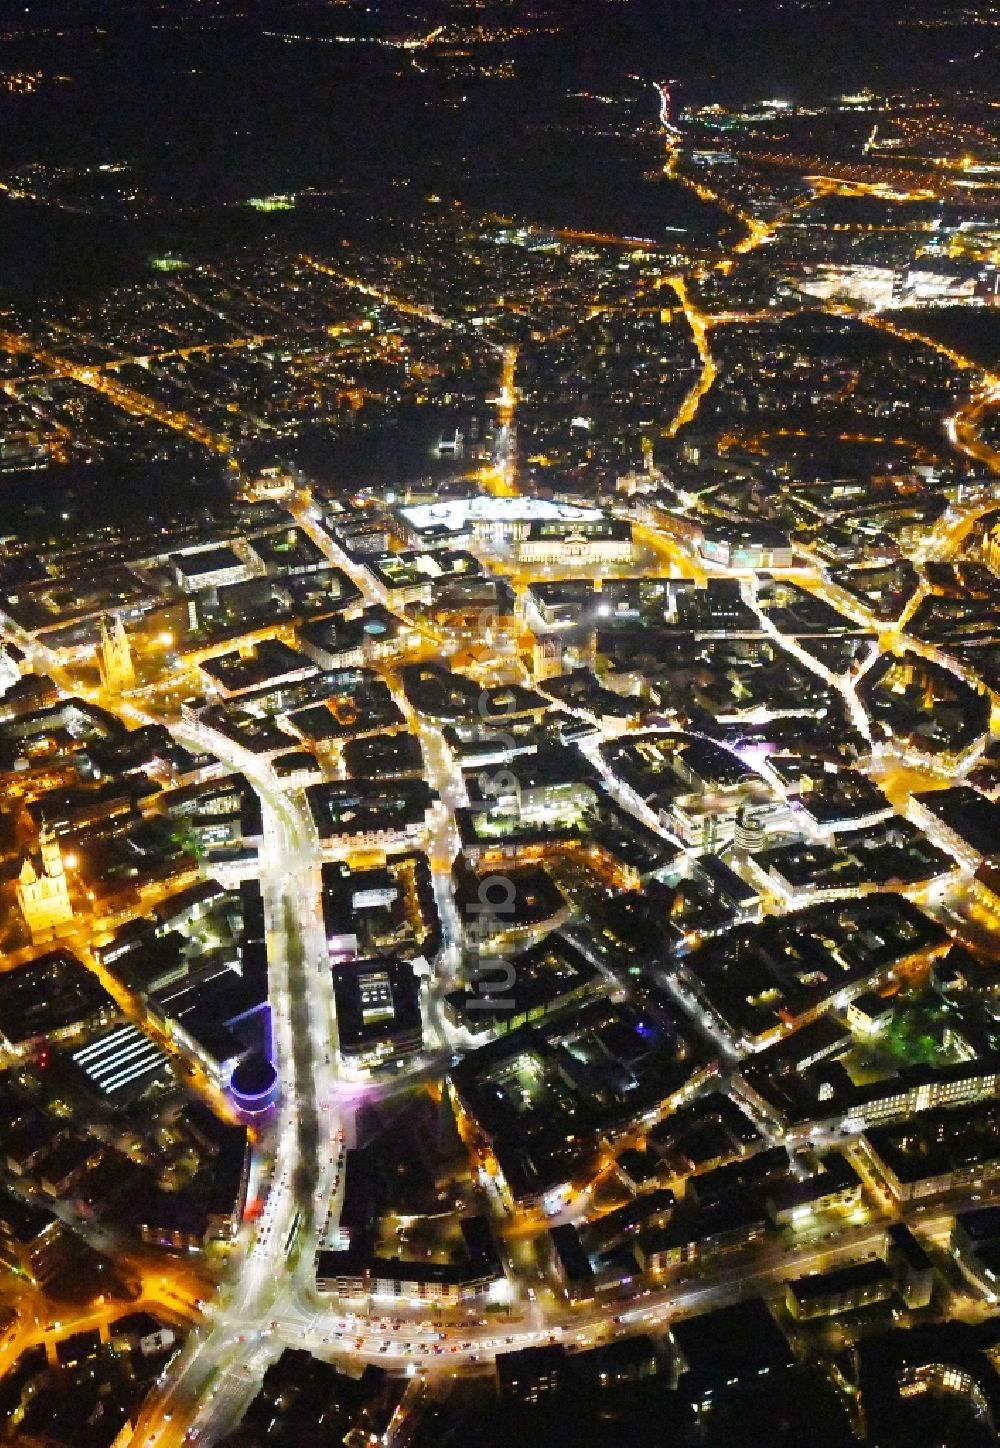 Nacht-Luftaufnahme Braunschweig - Nachtluftbild Stadtzentrum im Innenstadtbereich in Braunschweig im Bundesland Niedersachsen, Deutschland